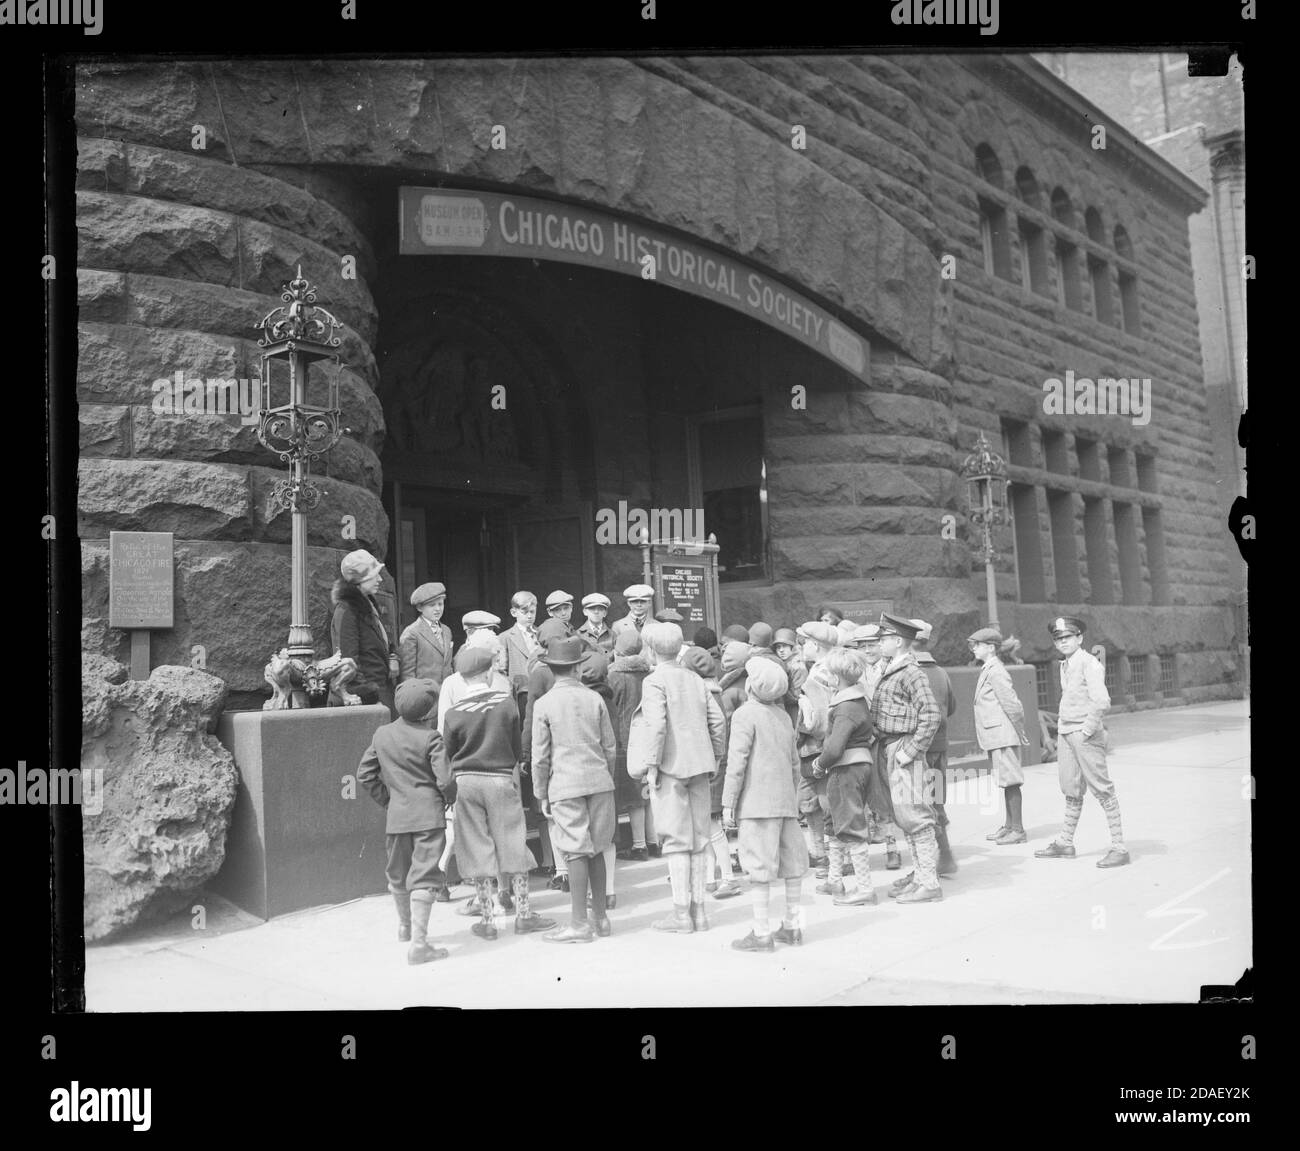 Groupe d'enfants à l'extérieur de l'entrée de la Chicago Historical Society, située à Dearborn et Ontario Streets, Chicago, Illinois, vers 1920. Banque D'Images